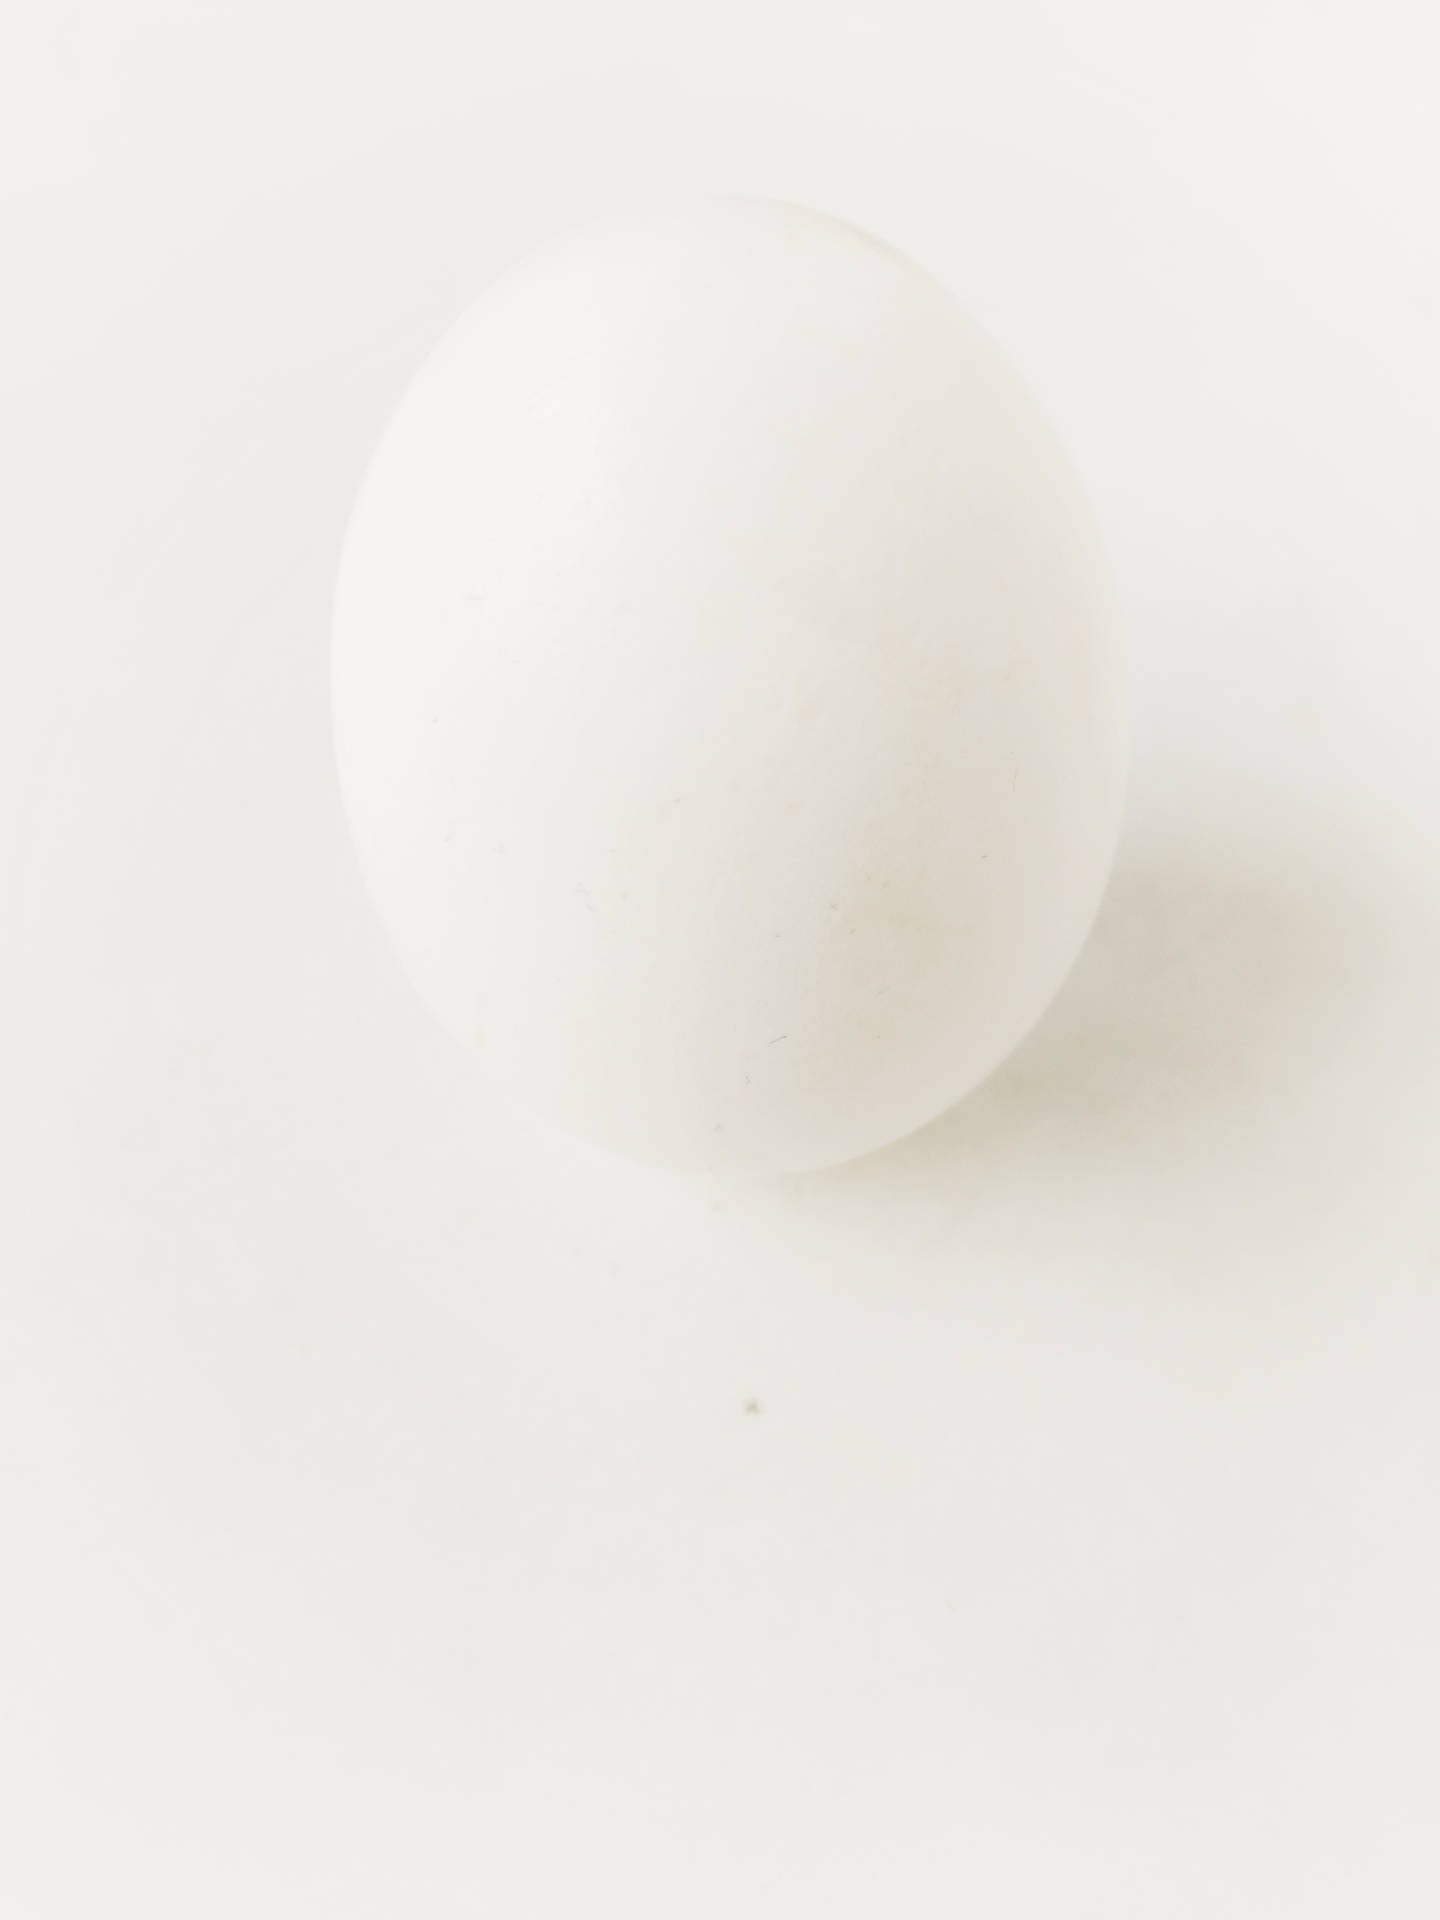 White Egg Background